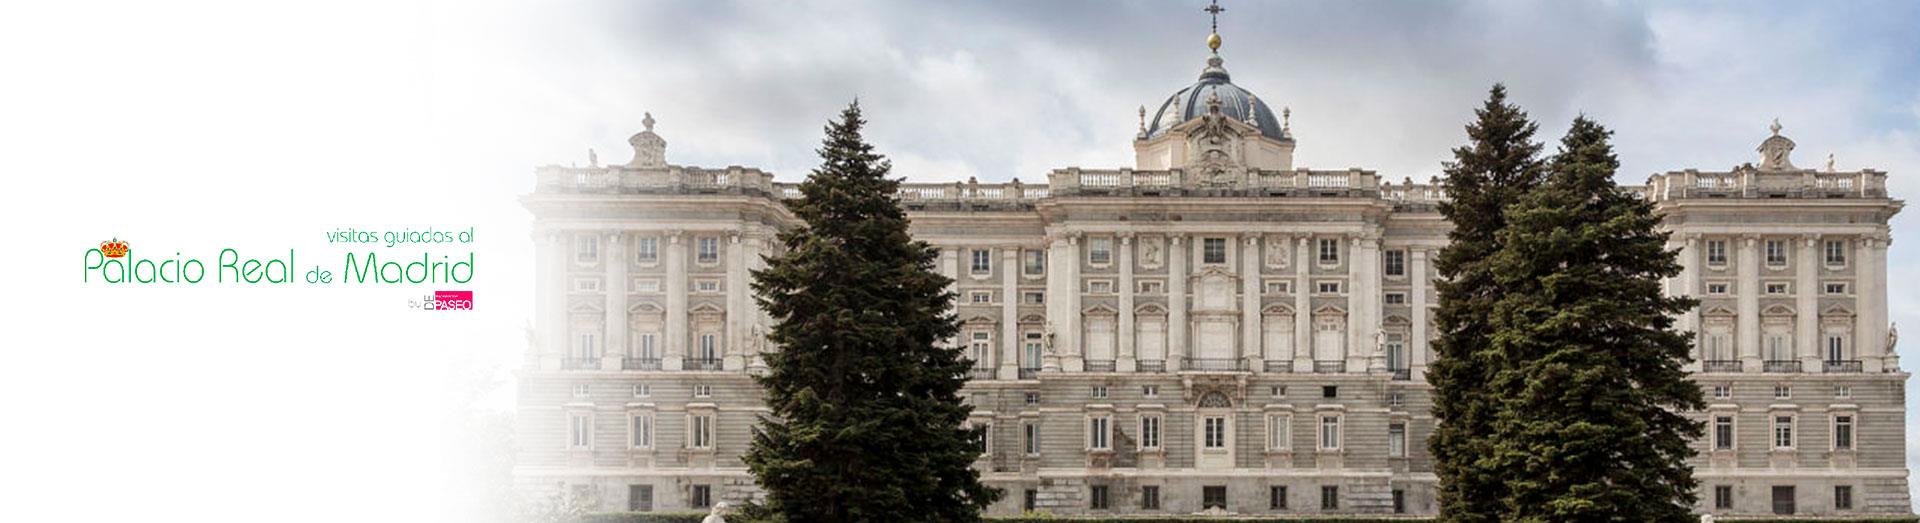 Essential-Madrid:-Prado-Museum-and-Royal-Palace-20